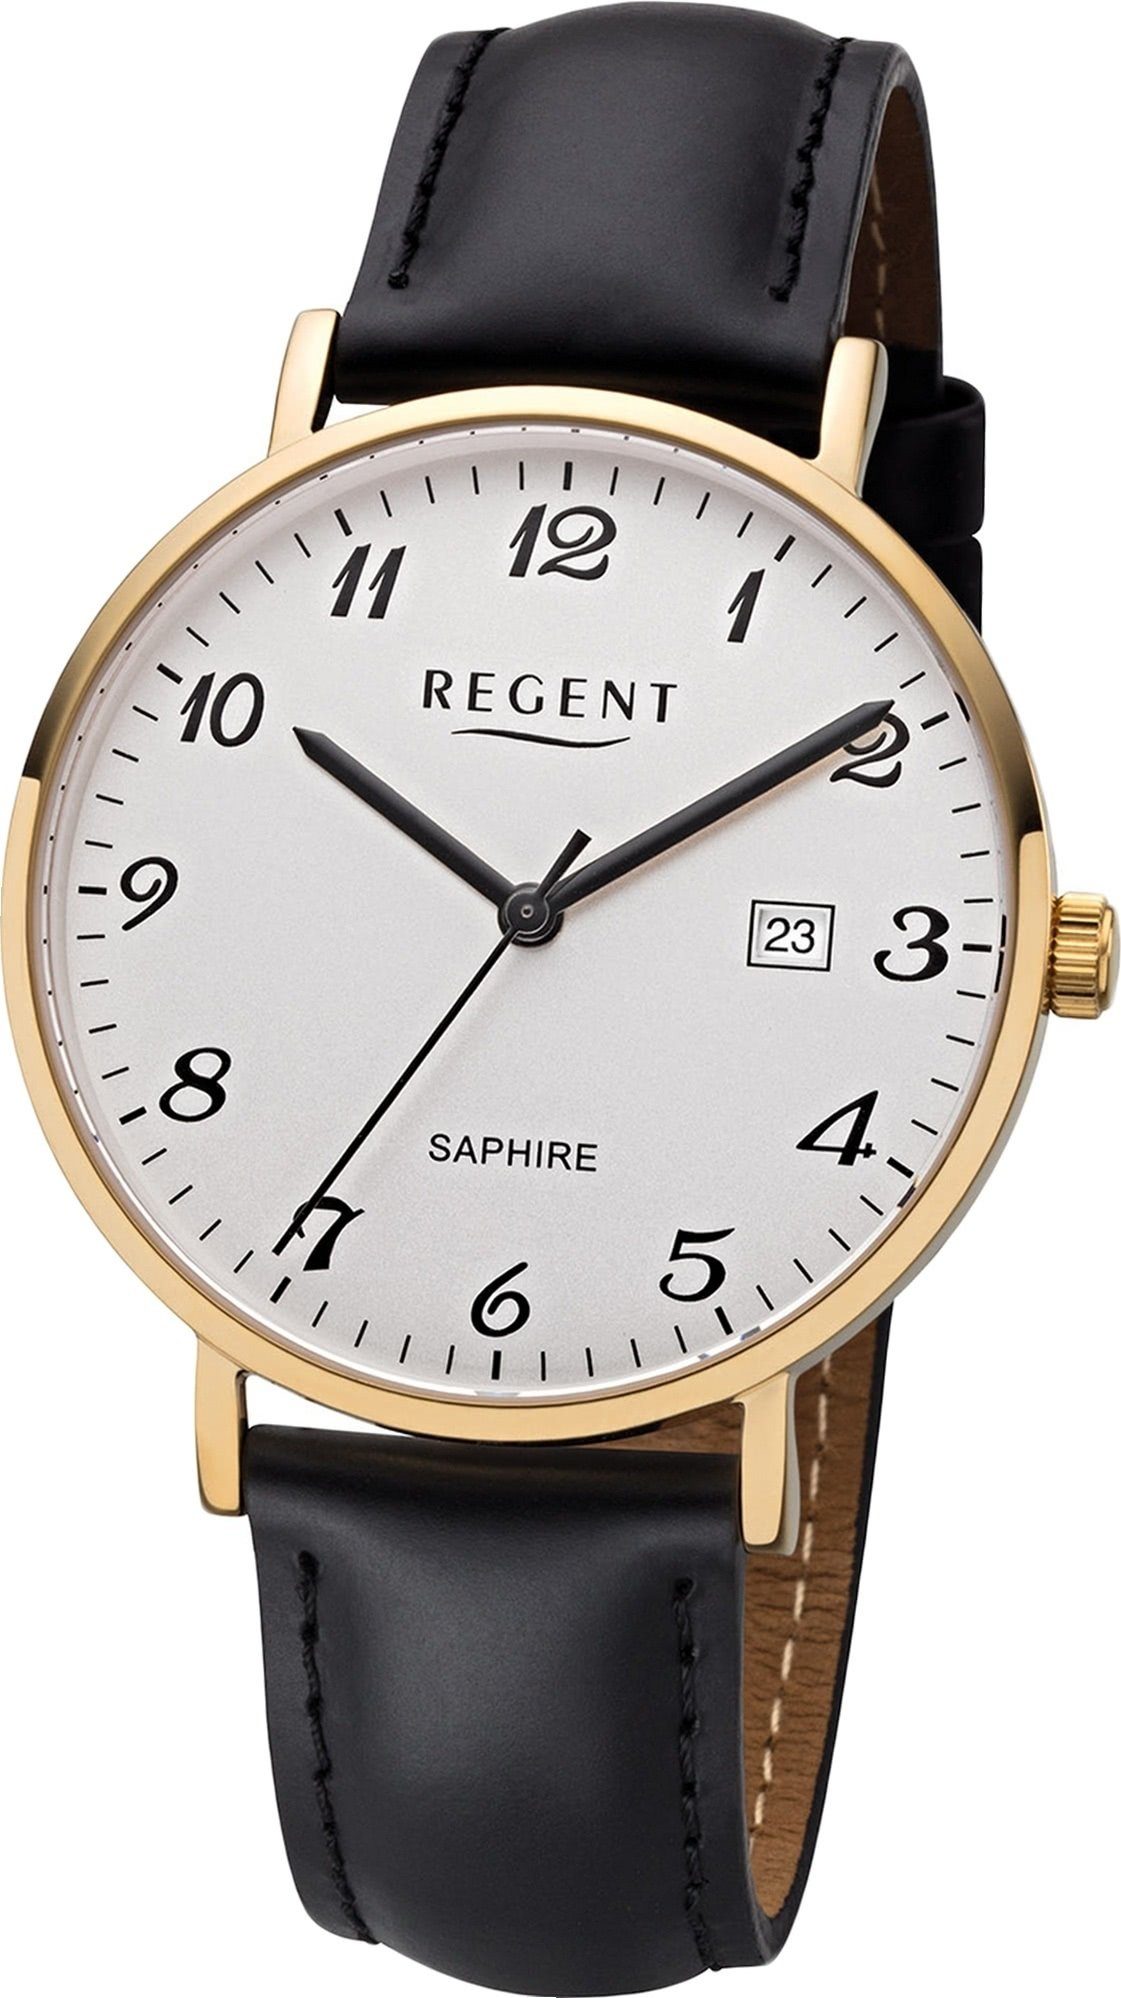 Regent Quarzuhr Regent Leder Herren Uhr F-1230 Analog, Herrenuhr Lederarmband schwarz, rundes Gehäuse, mittel (ca. 38mm)